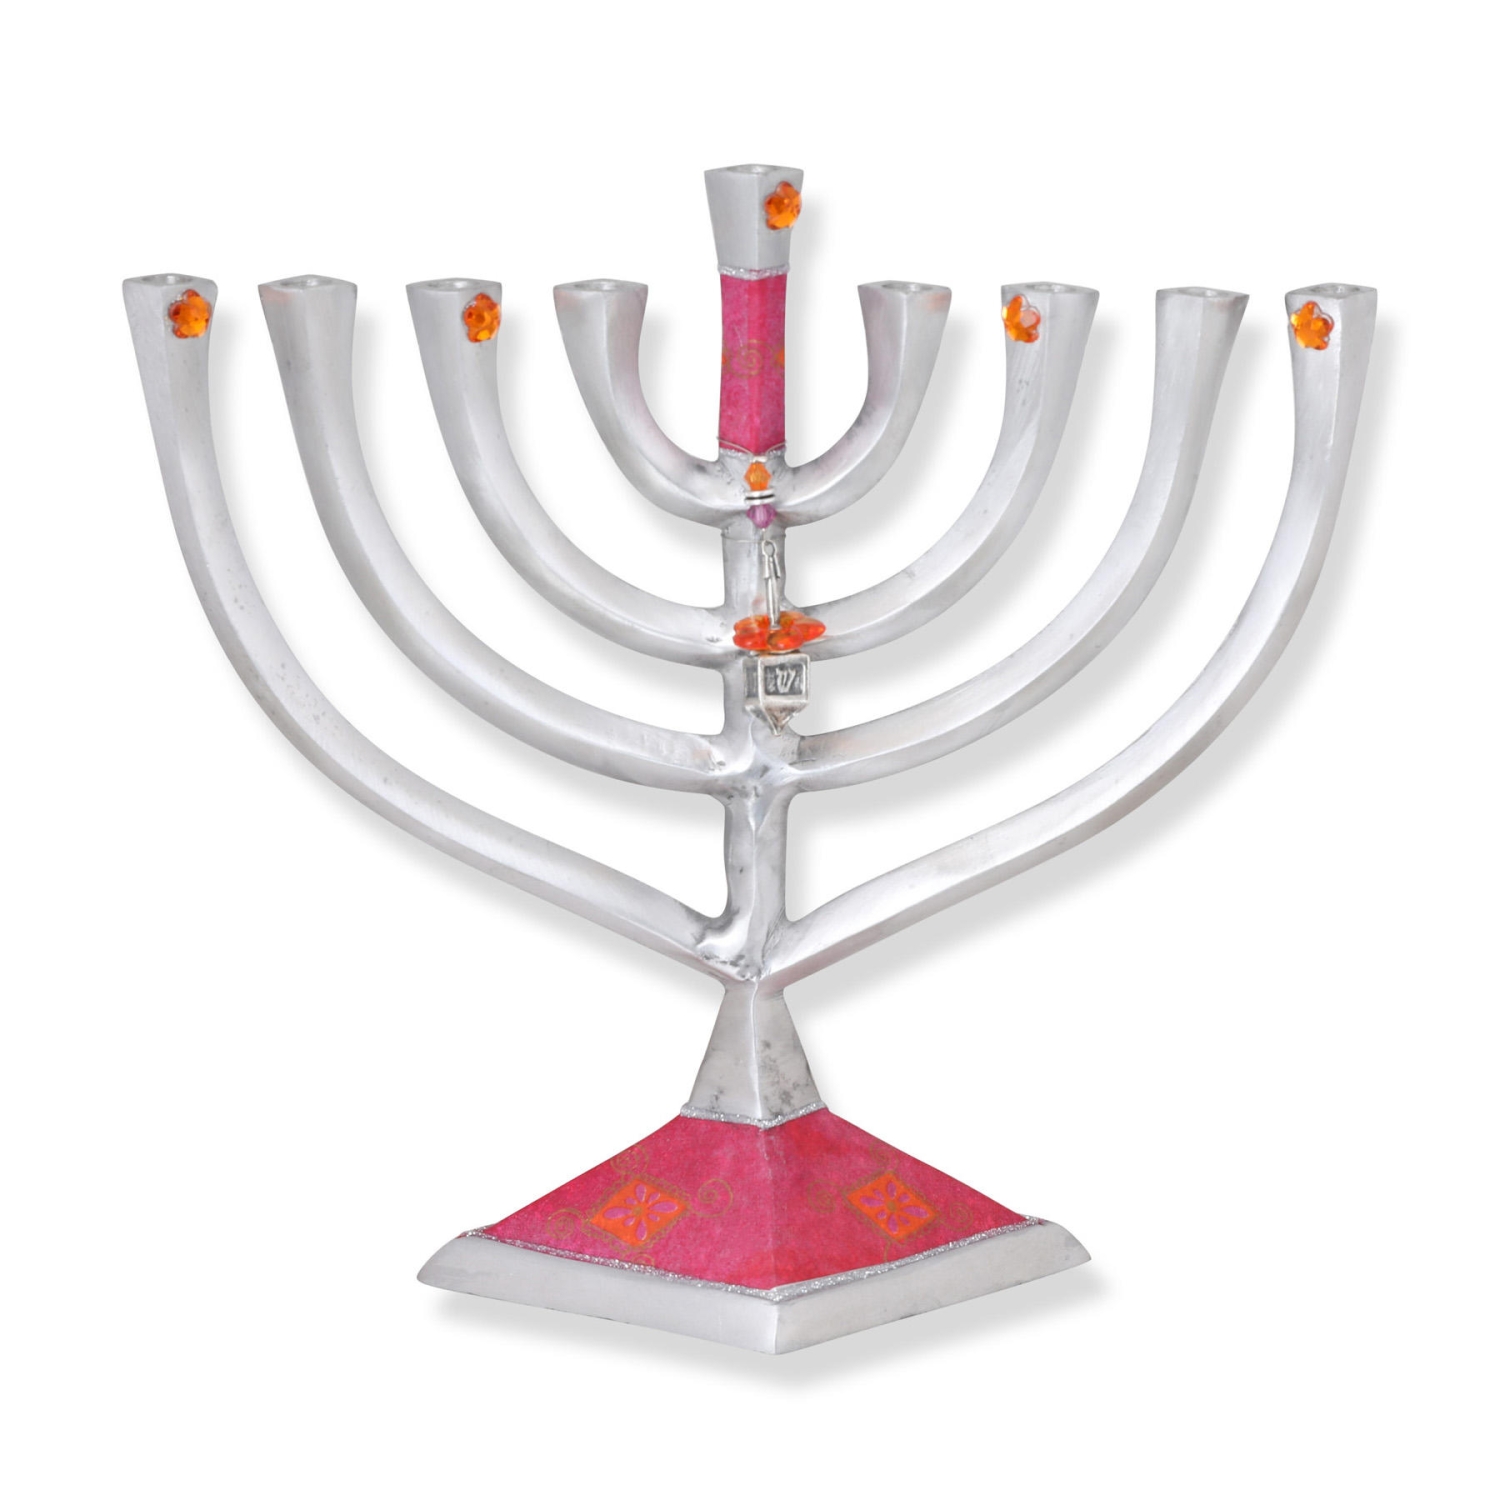 Lily Art Aluminum Hanukkah Menorah with Dreidel (Pink) - 1